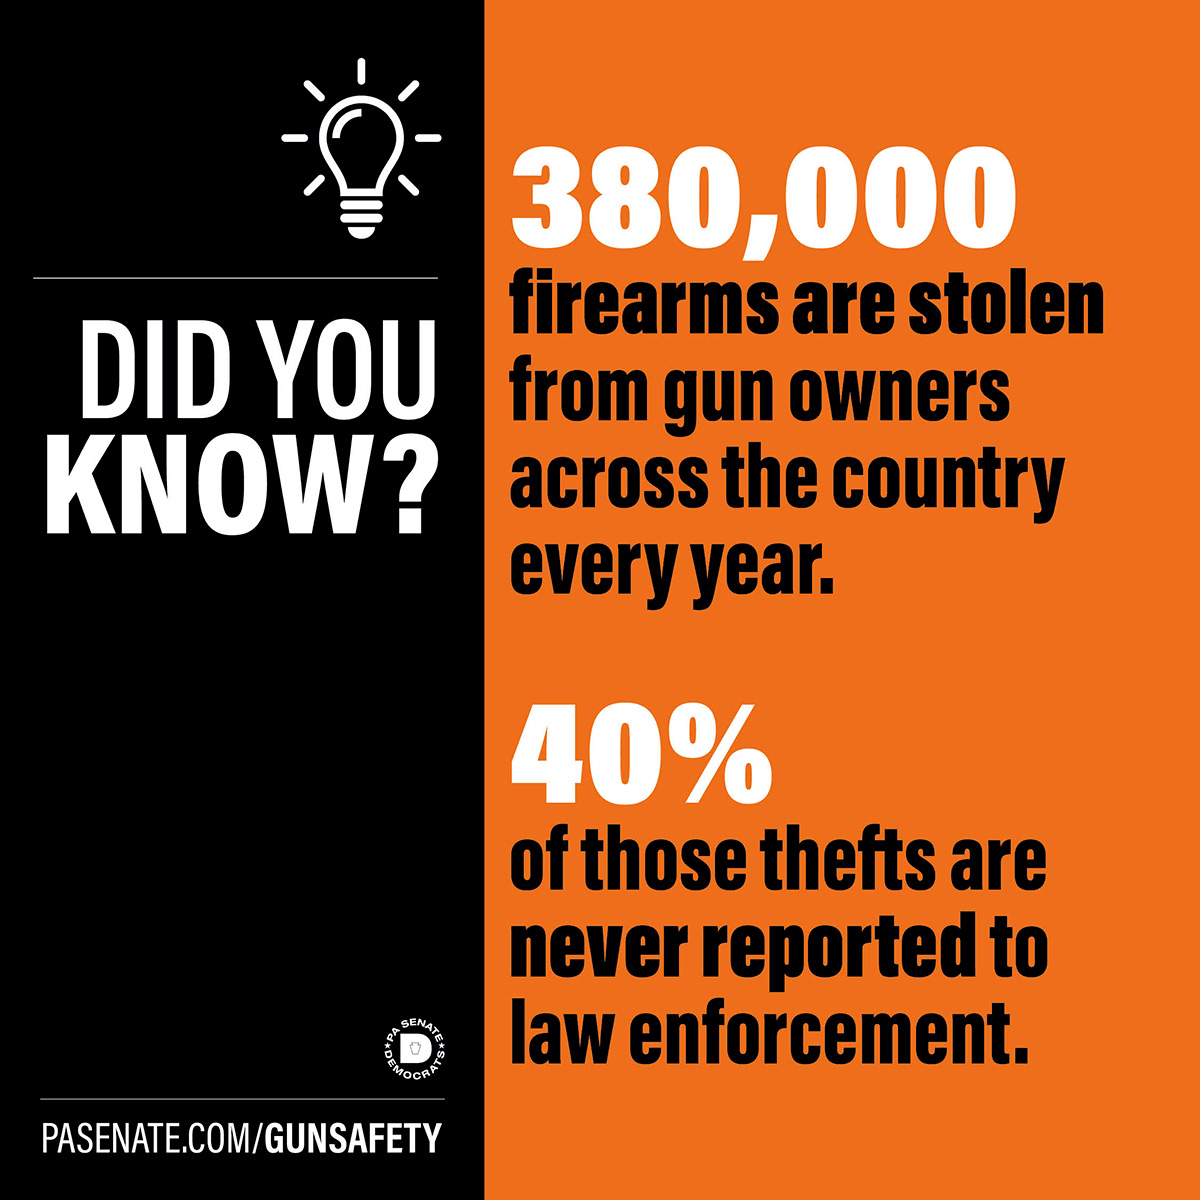 ¿Sabía que? Cada año se roban 380.000 armas de fuego a sus propietarios en todo el país.